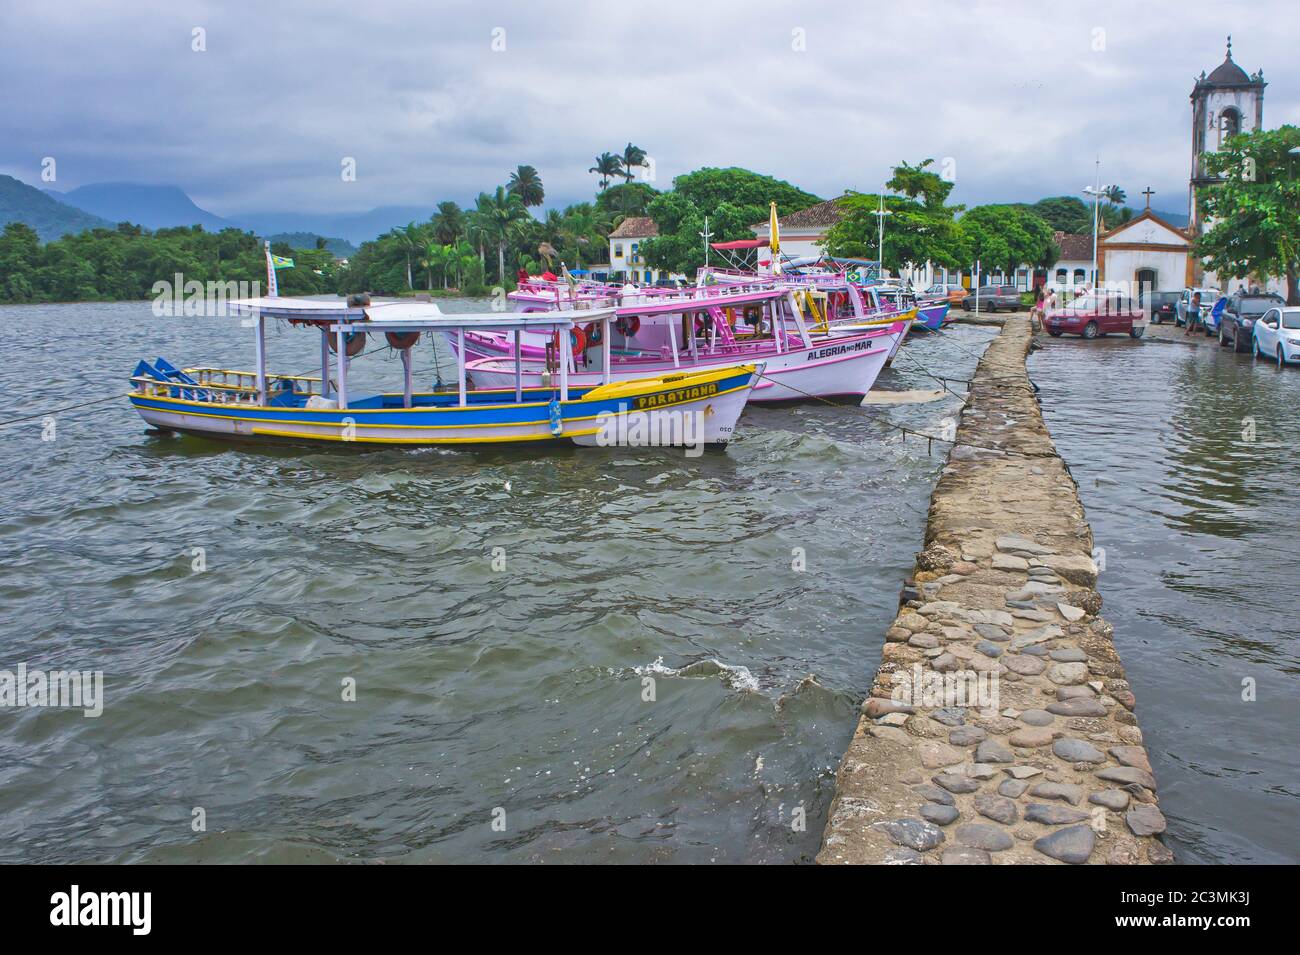 Paraty, vue sur la vieille ville avec des bateaux colorés, Brésil, Amérique du Sud Banque D'Images